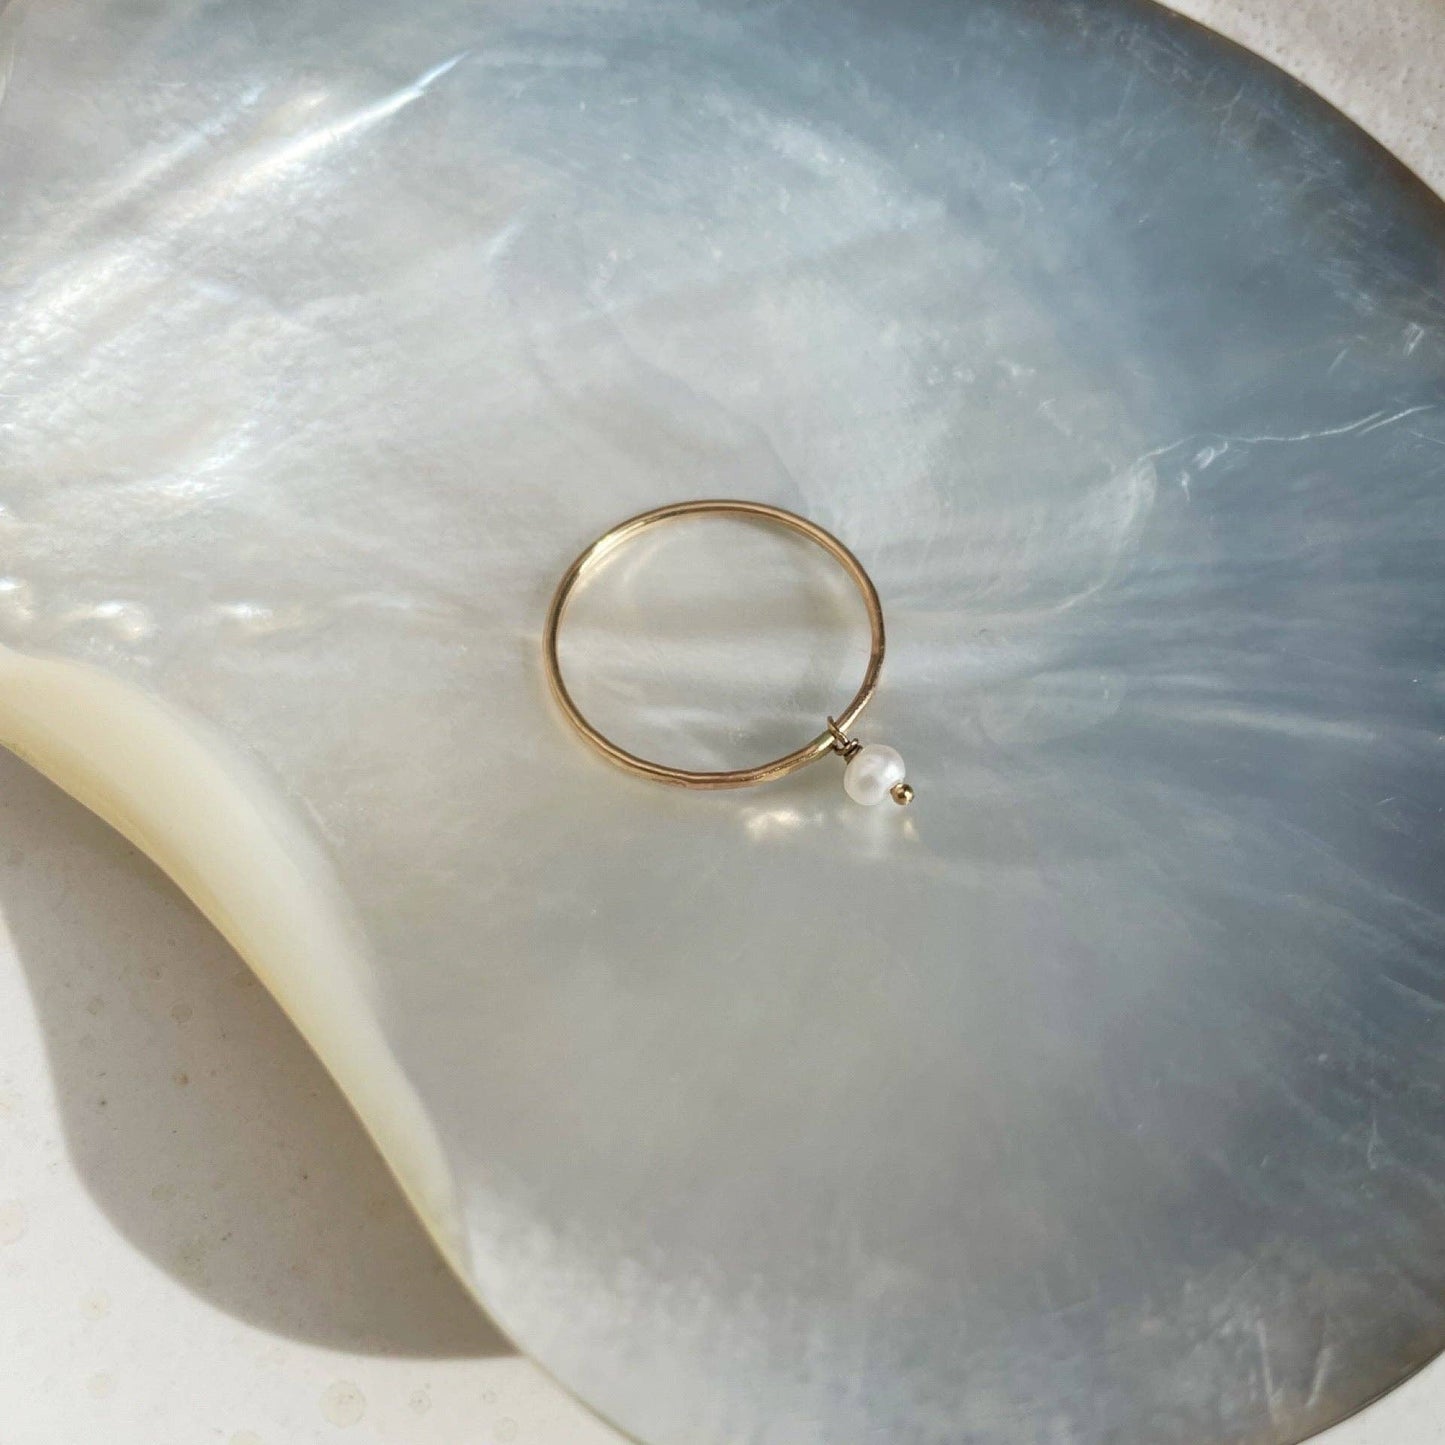 Pearla Ring: 6 / 14k Gold Fill